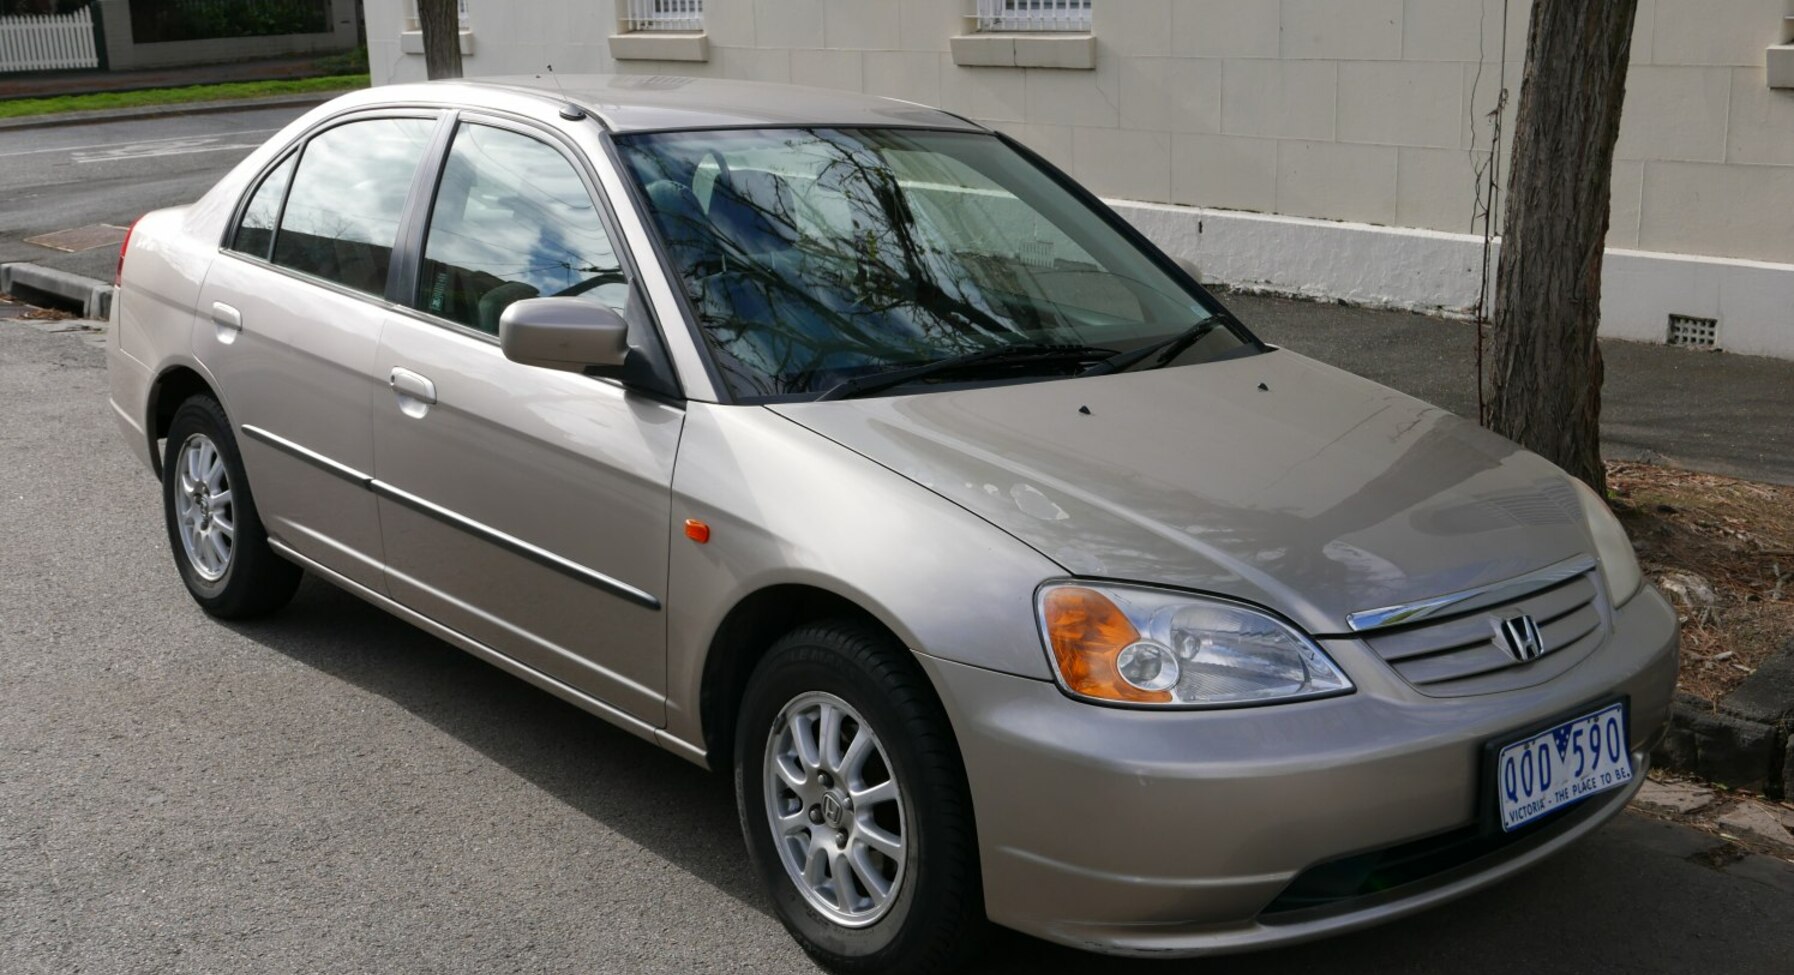 Honda Civic VII Sedan 1.3 (93 Hp) Hybrid CVT 2003, 2004, 2005, 2006